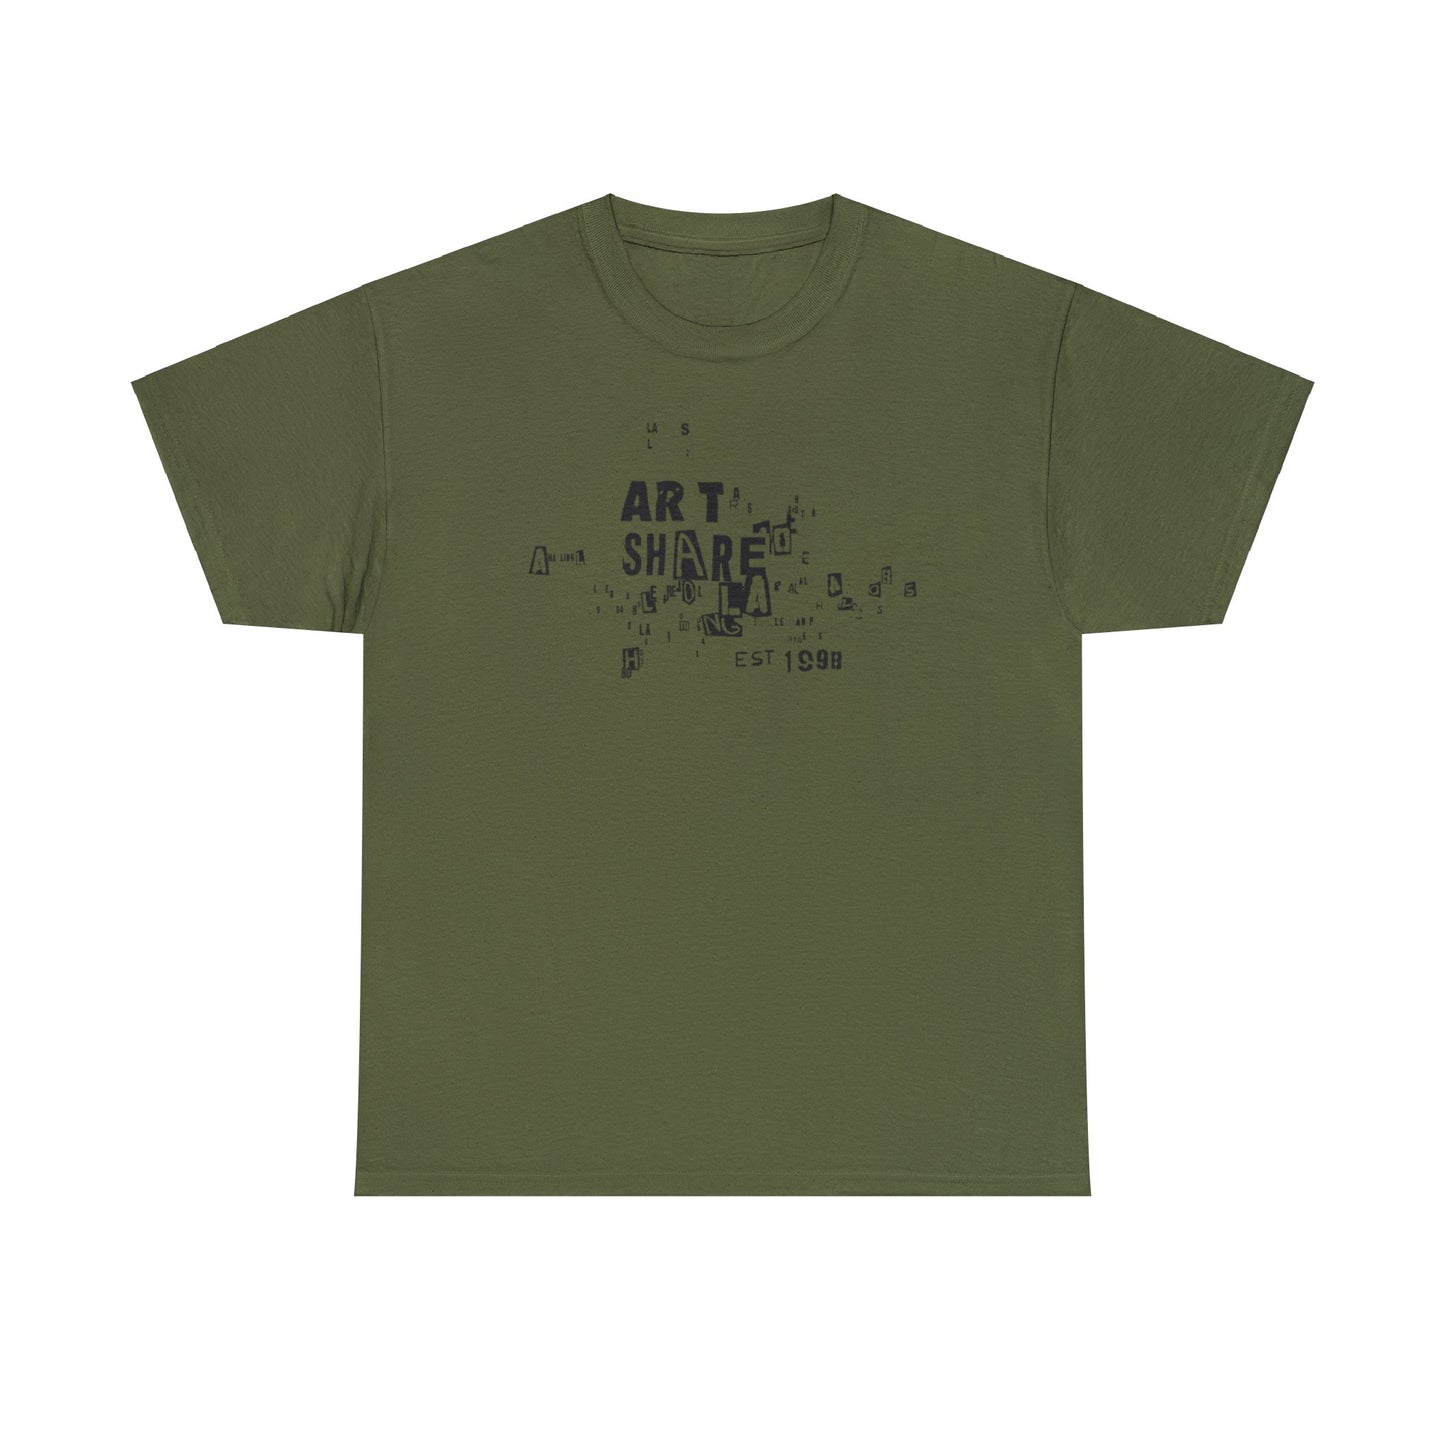 ART SHARE L.A. EST. 1998 T-Shirt